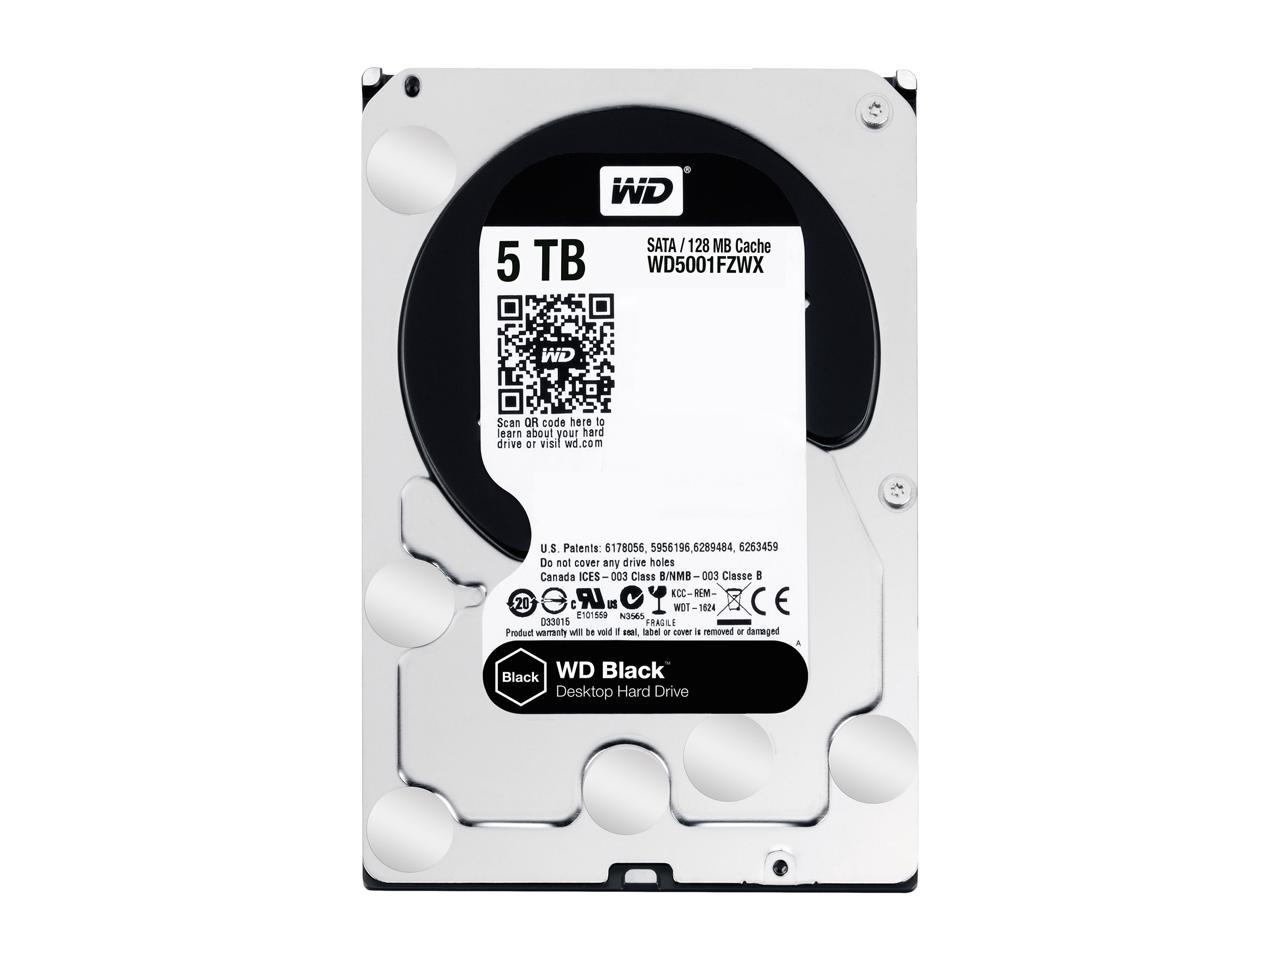 WD Black 5TB Performance Desktop Hard Disk Drive - 7200 RPM SATA 6Gb/s 128MB Cache 3.5 Inch - WD5001FZWX